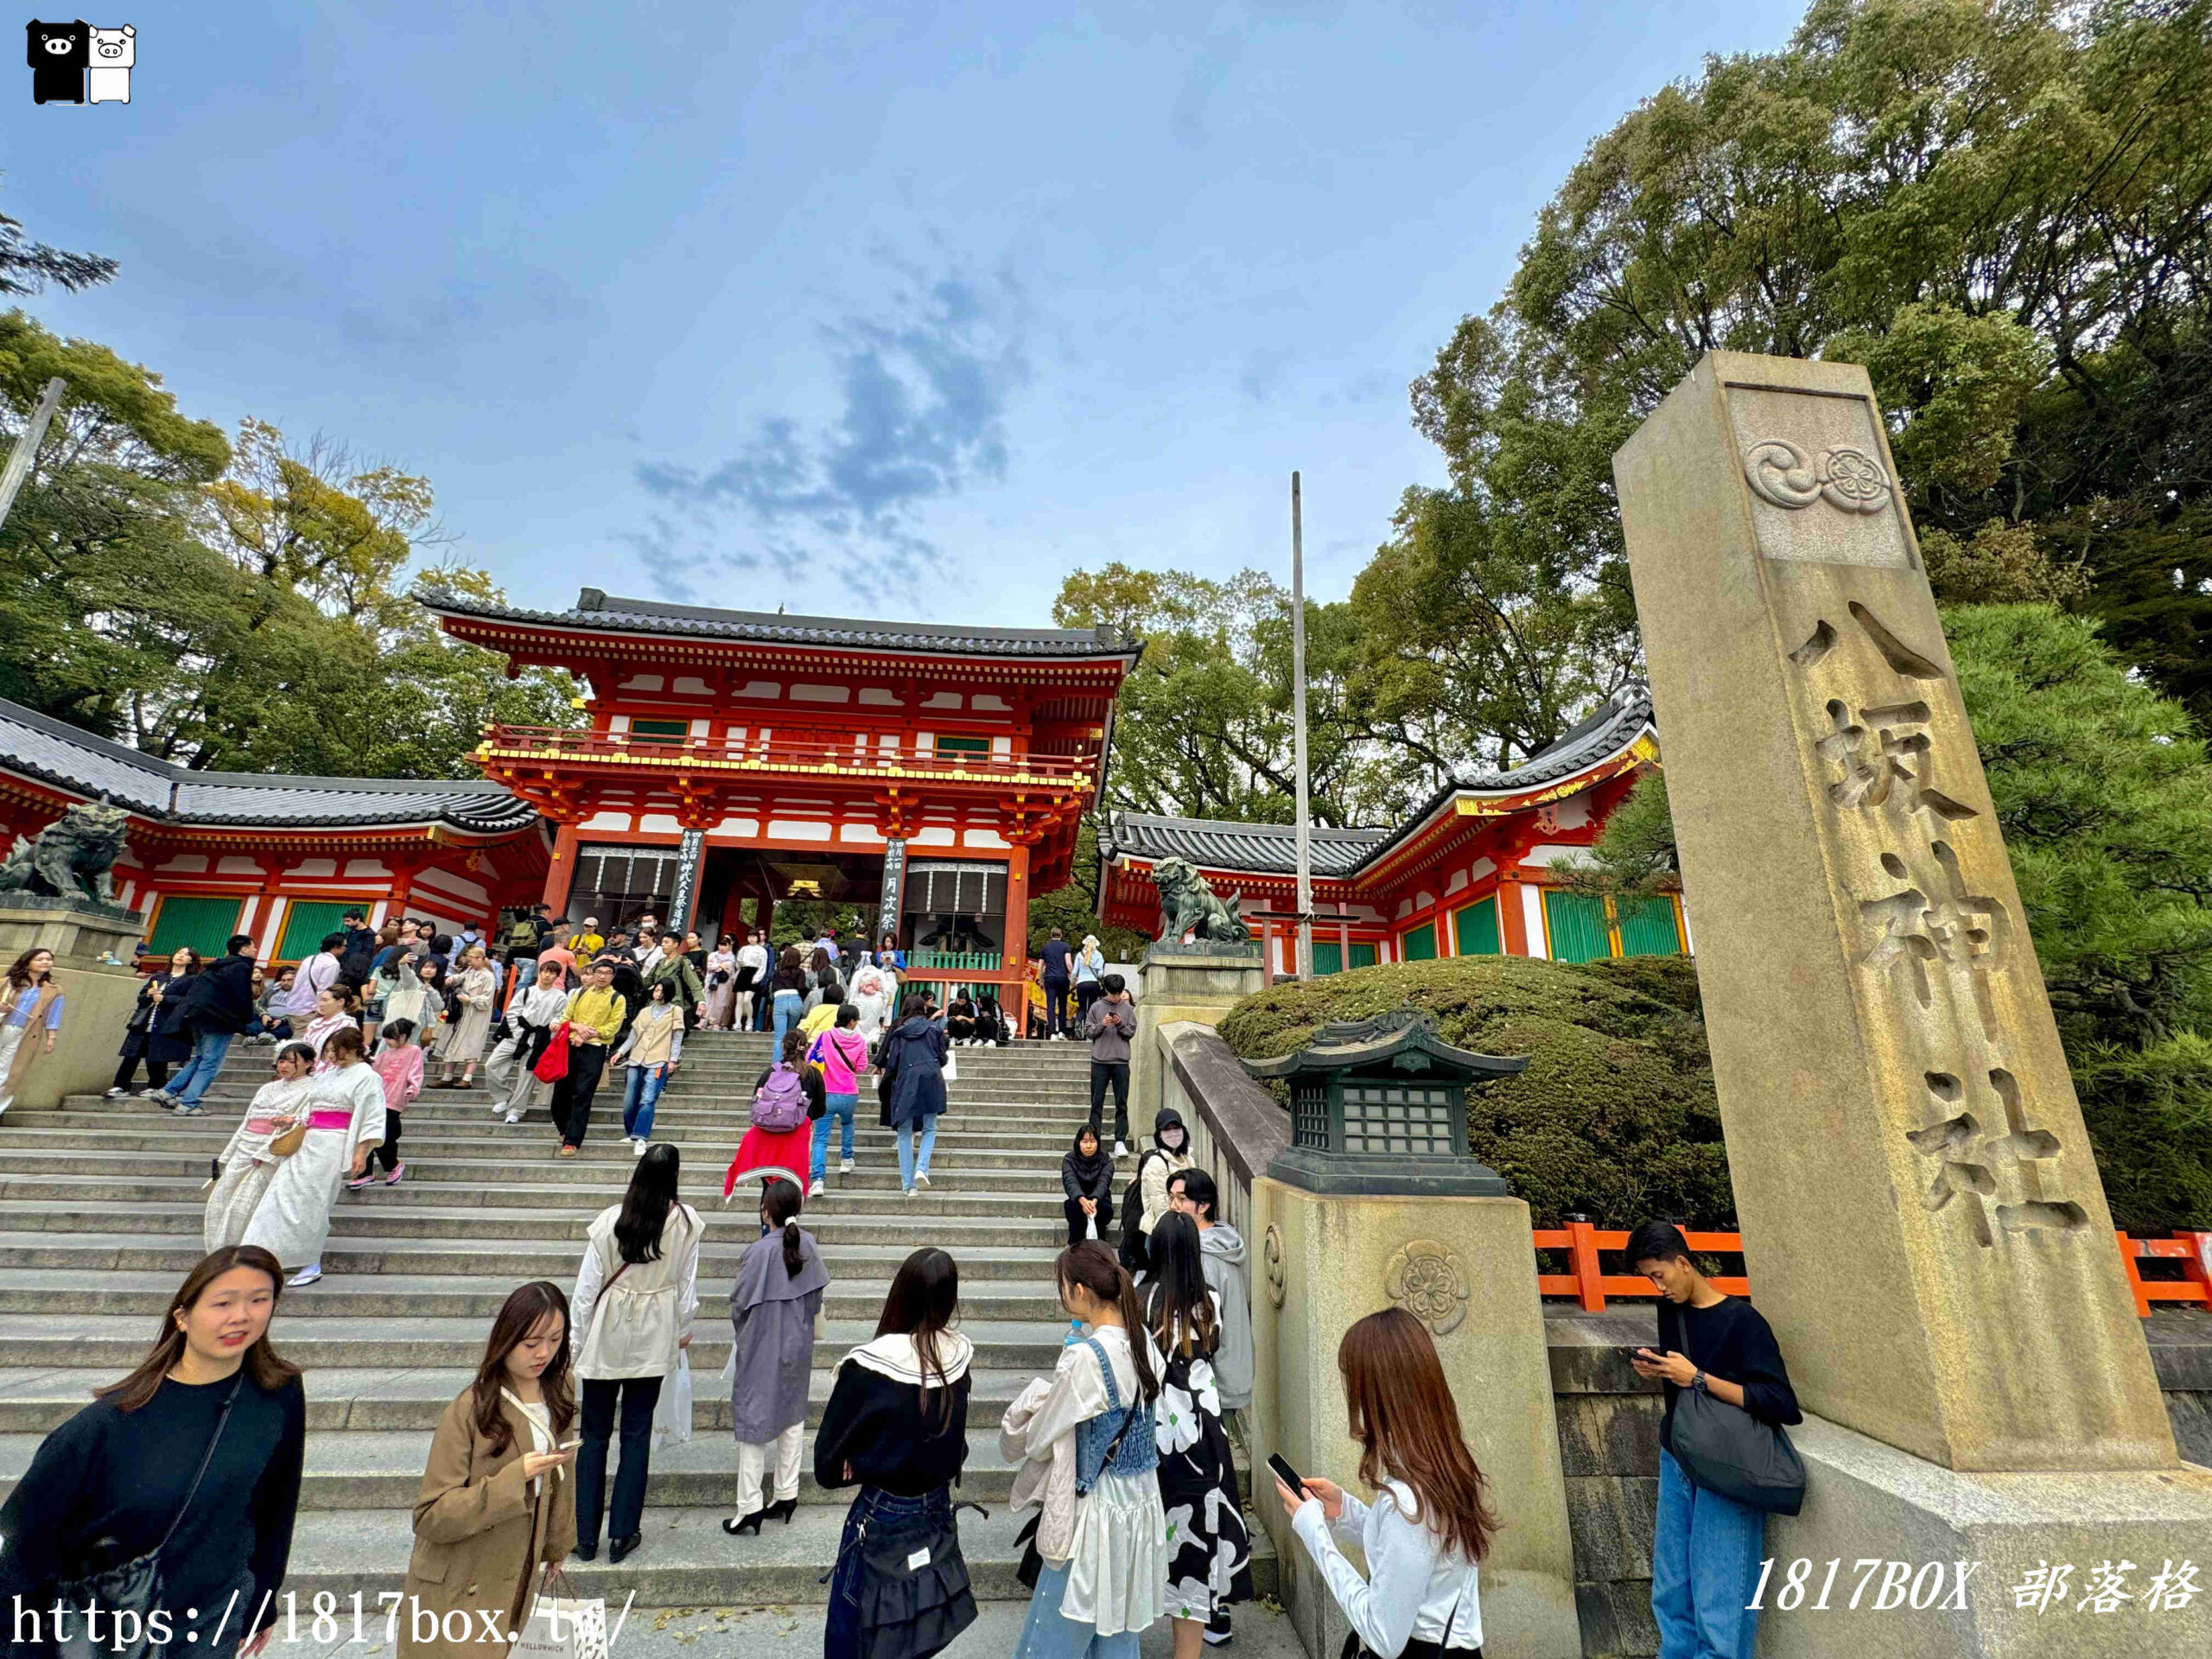 即時熱門文章：【京都景點】日本三大祭「祇園祭」發祥地。京都八坂神社